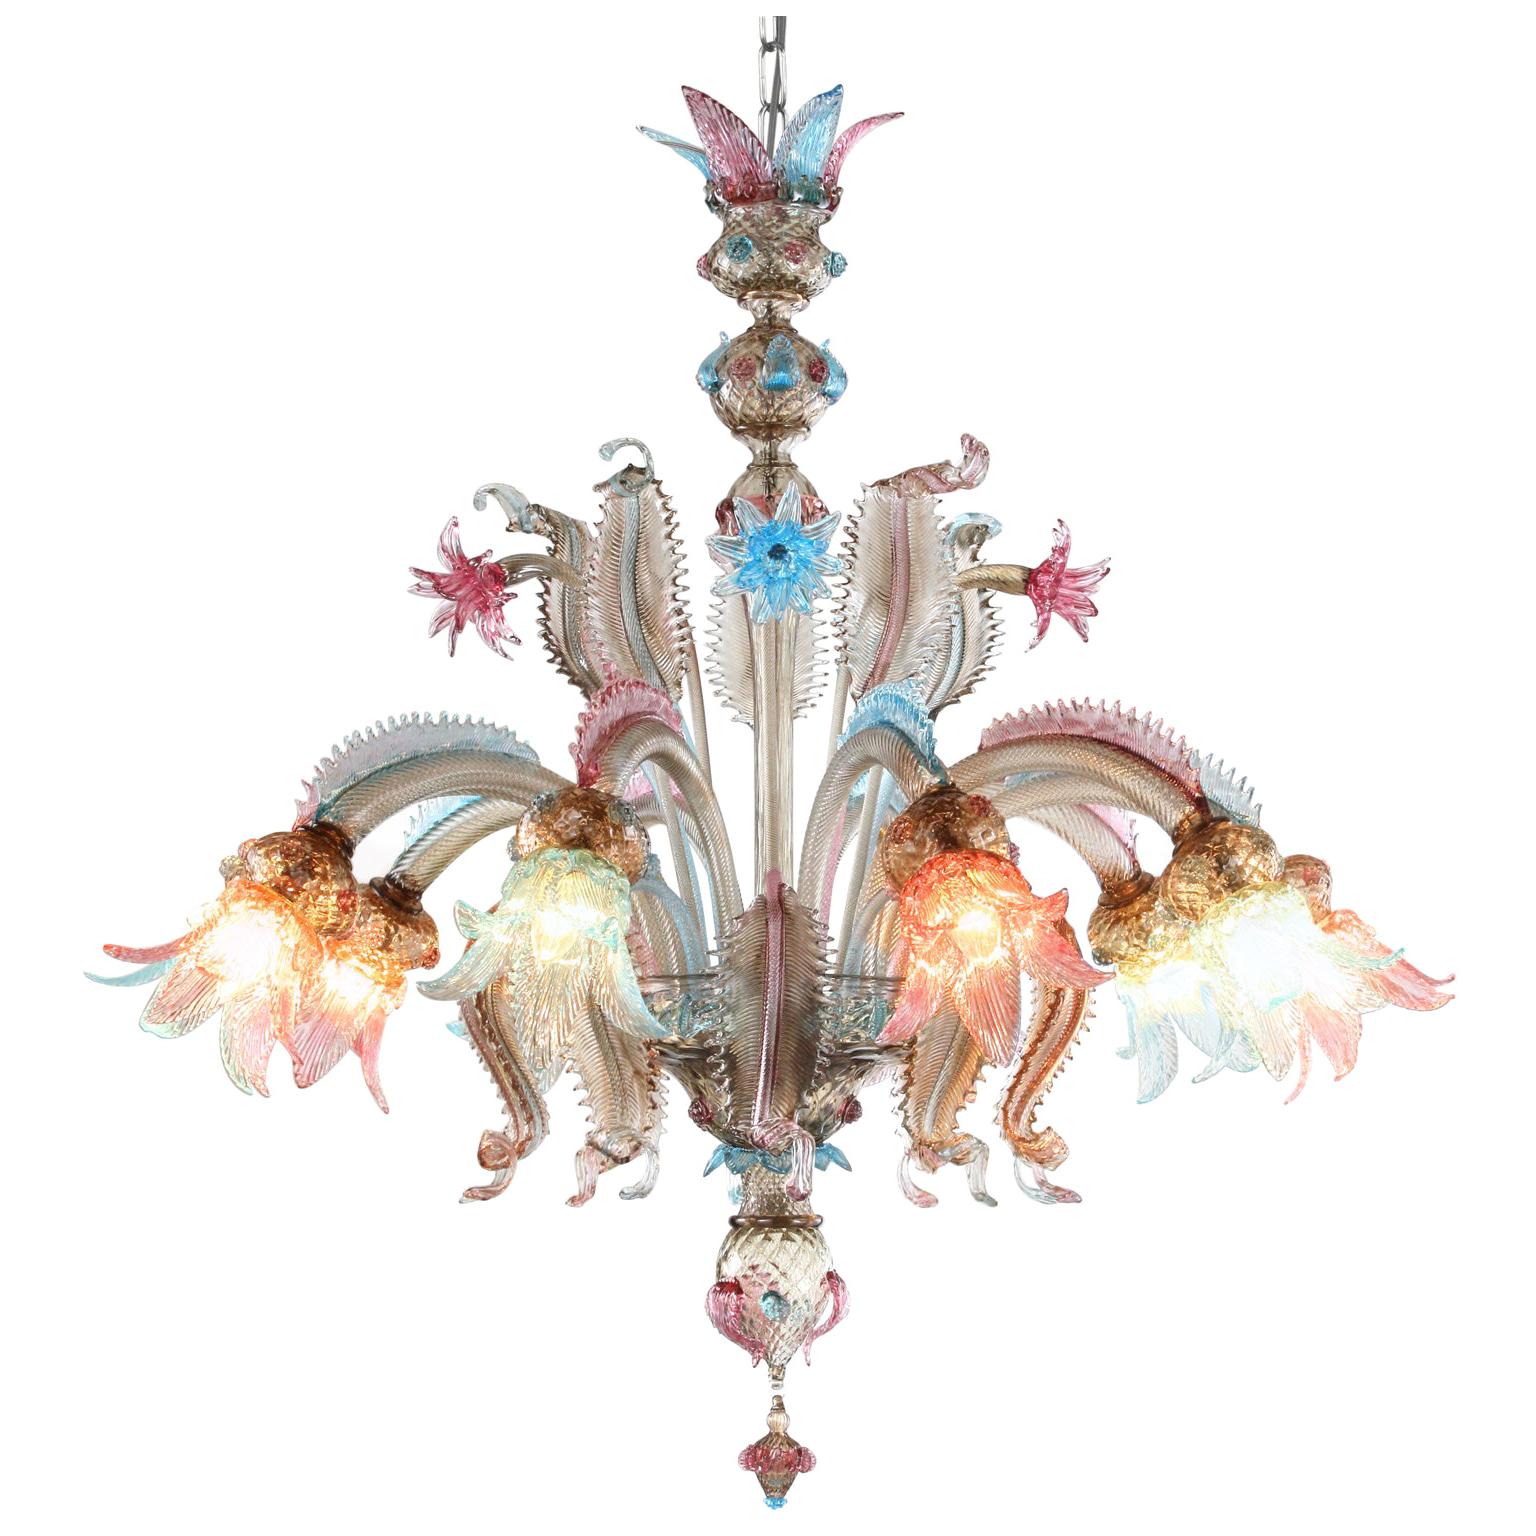 Le lustre classique en verre de Murano, tel qu'il apparaît dans l'imagerie collective. Tout comme les autres lustres de nos collections, il est conçu avec le souci du détail et la passion. Chaque produit (des lustres monumentaux aux pièces plus